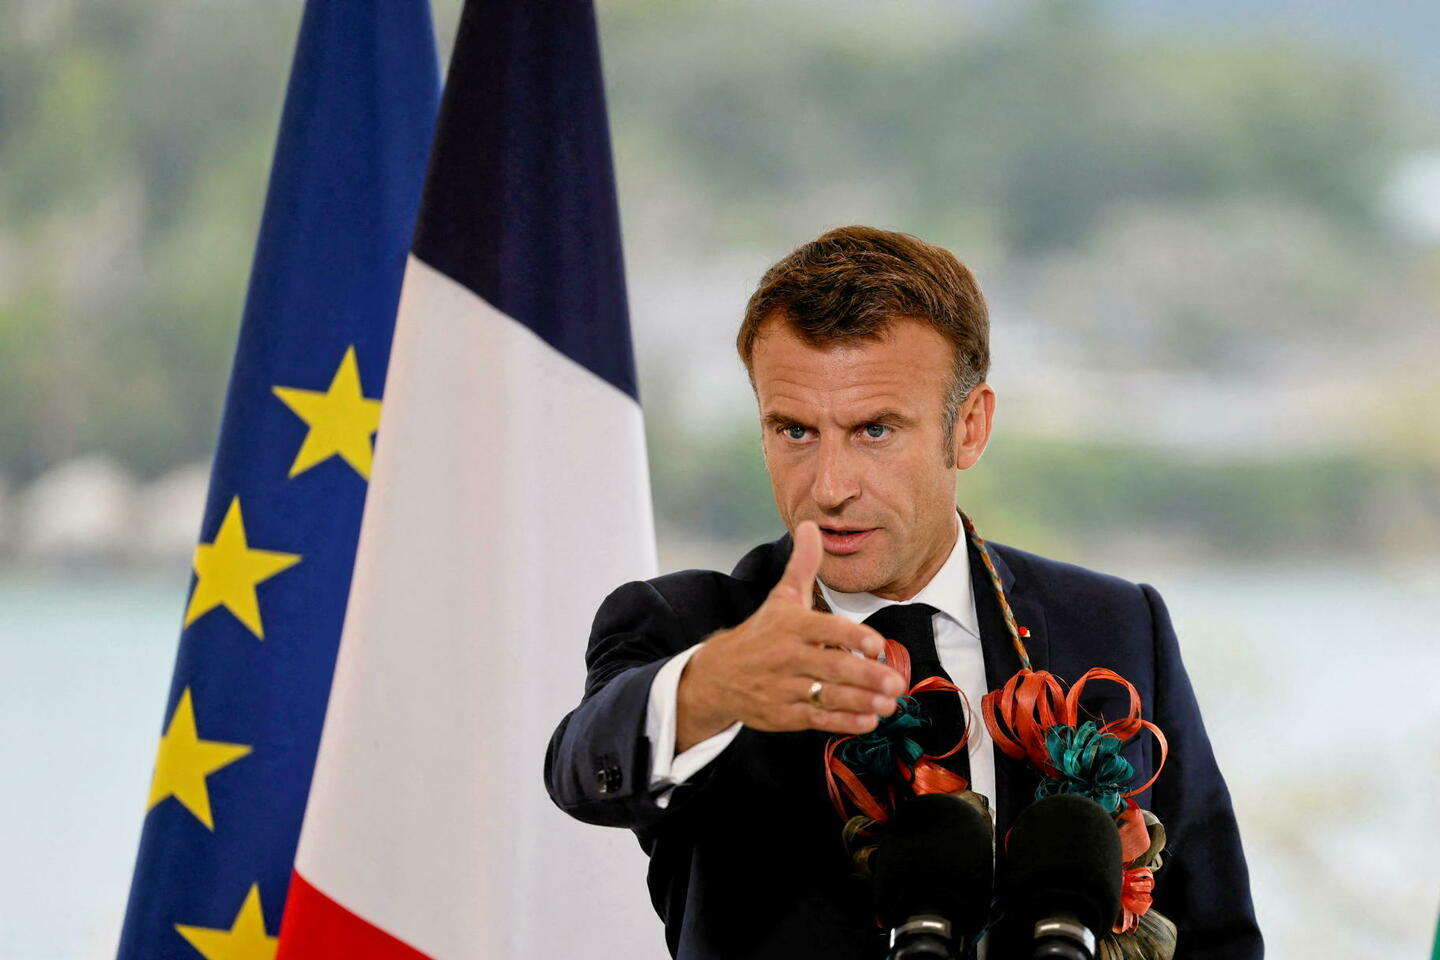 “لو بوان” الفرنسية تتساءل: هل مازال هناك رئيس لفرنسا بعد 5 سنوات رئاسية ميتة؟